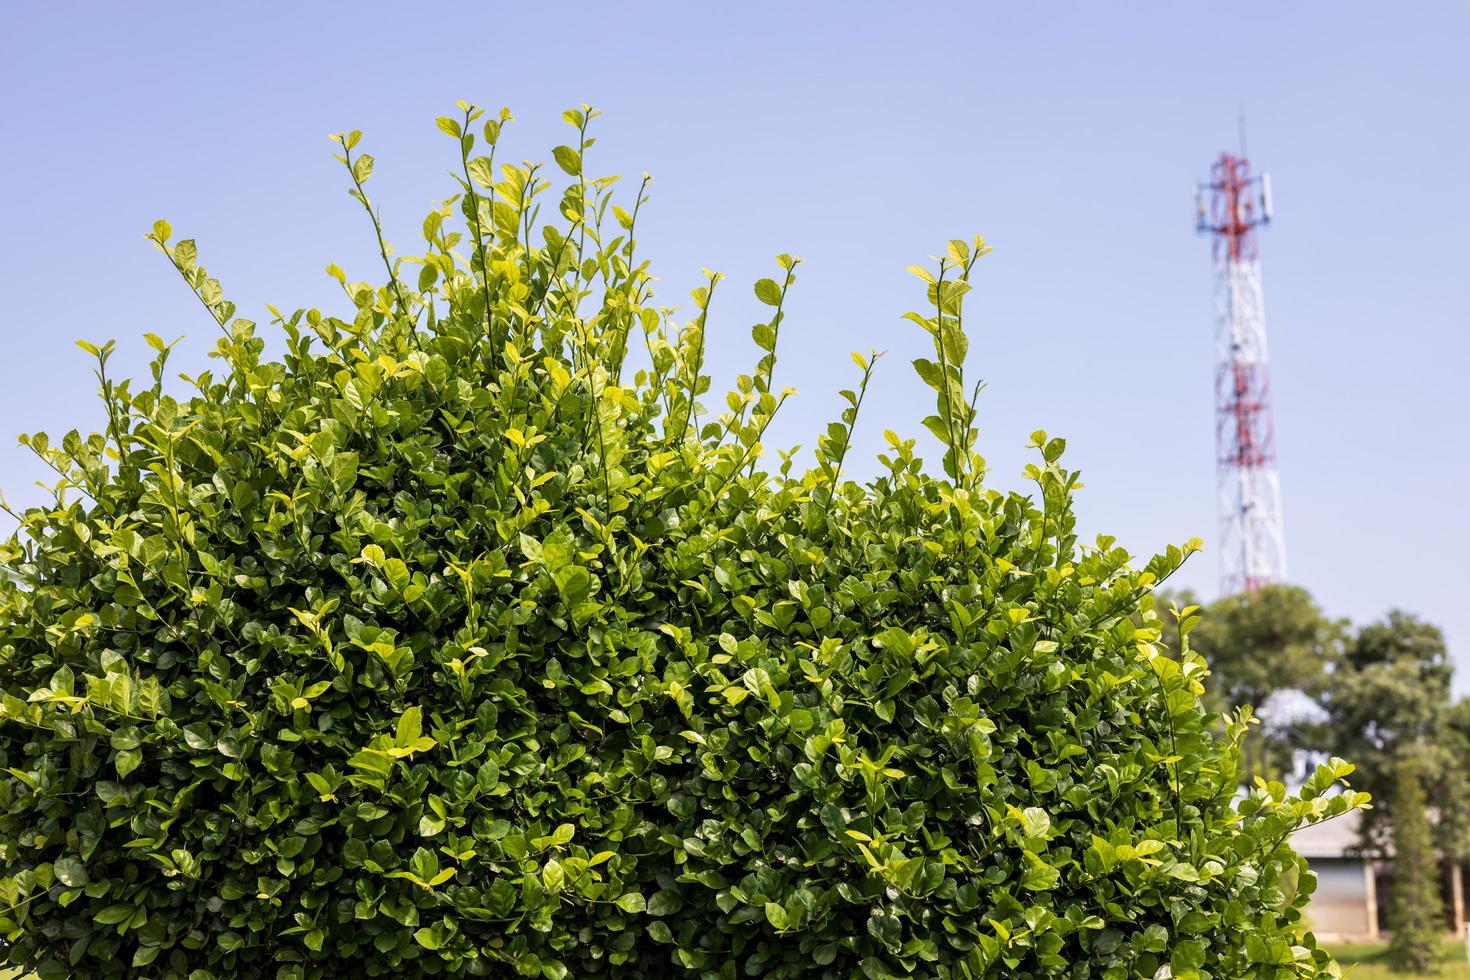 folhas, arbustos e torres de telecomunicações. foto